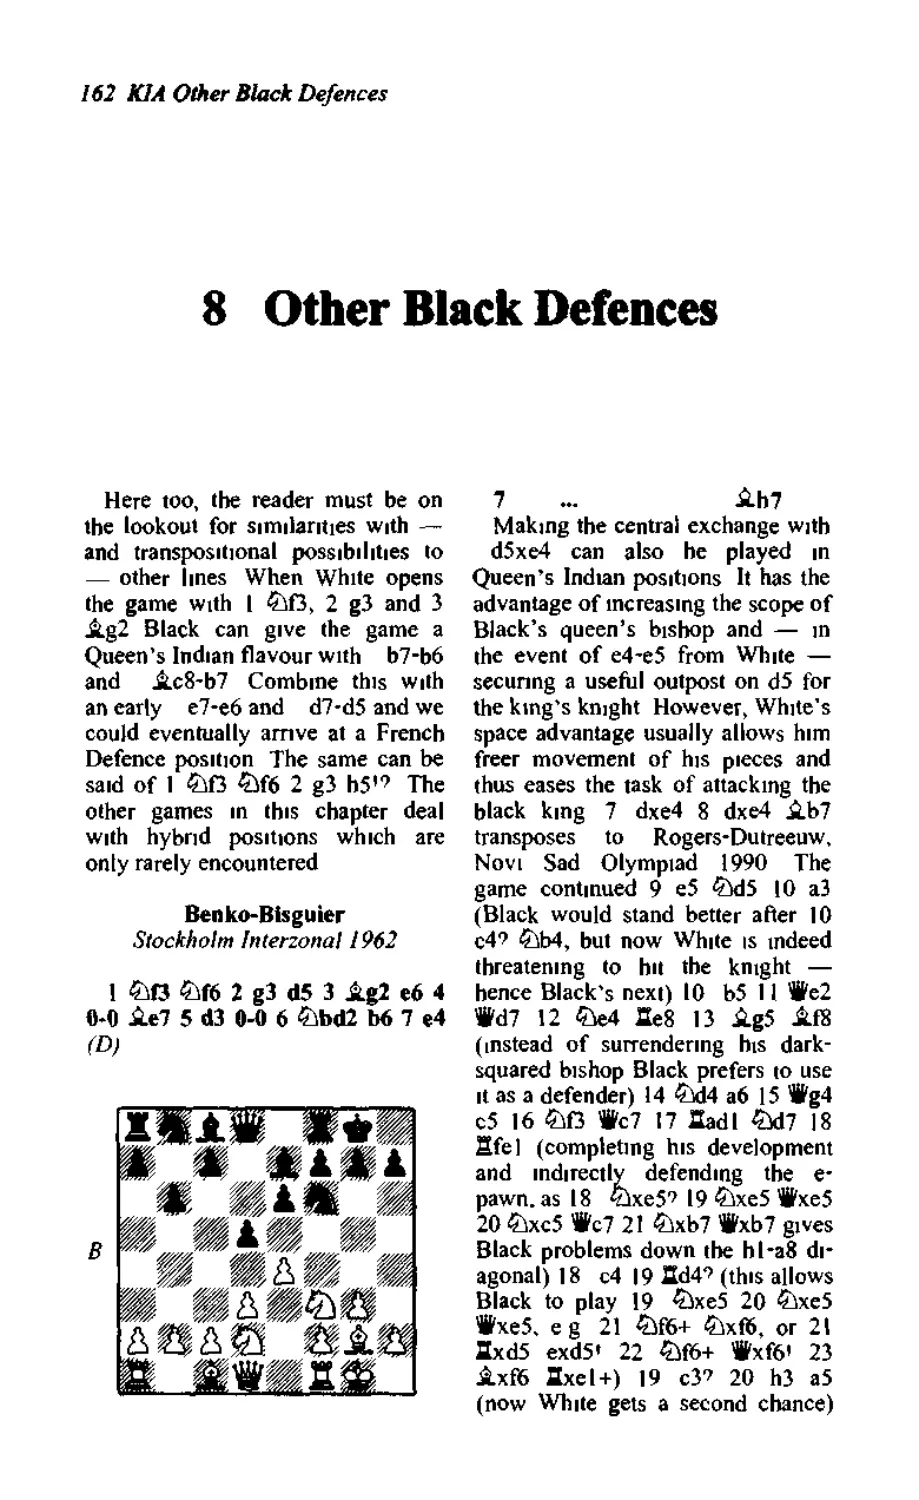 8. Other Black defences